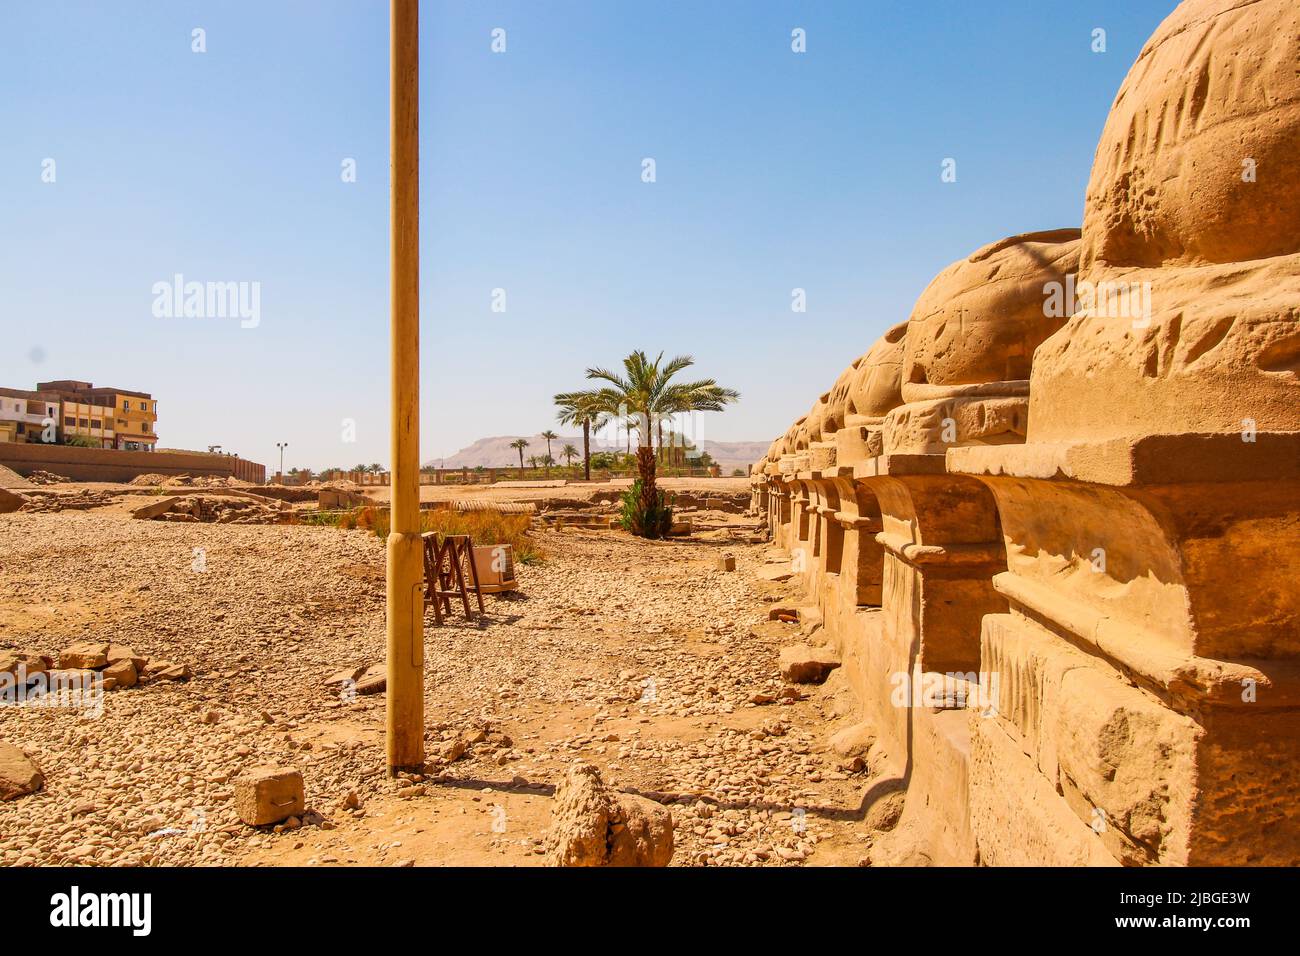 Innenstadt in Luxor, Ägypten. Bild der Ruinen mit Kakteen und Bäumen in der Wüste außerhalb des Stadtzentrums. Stockfoto